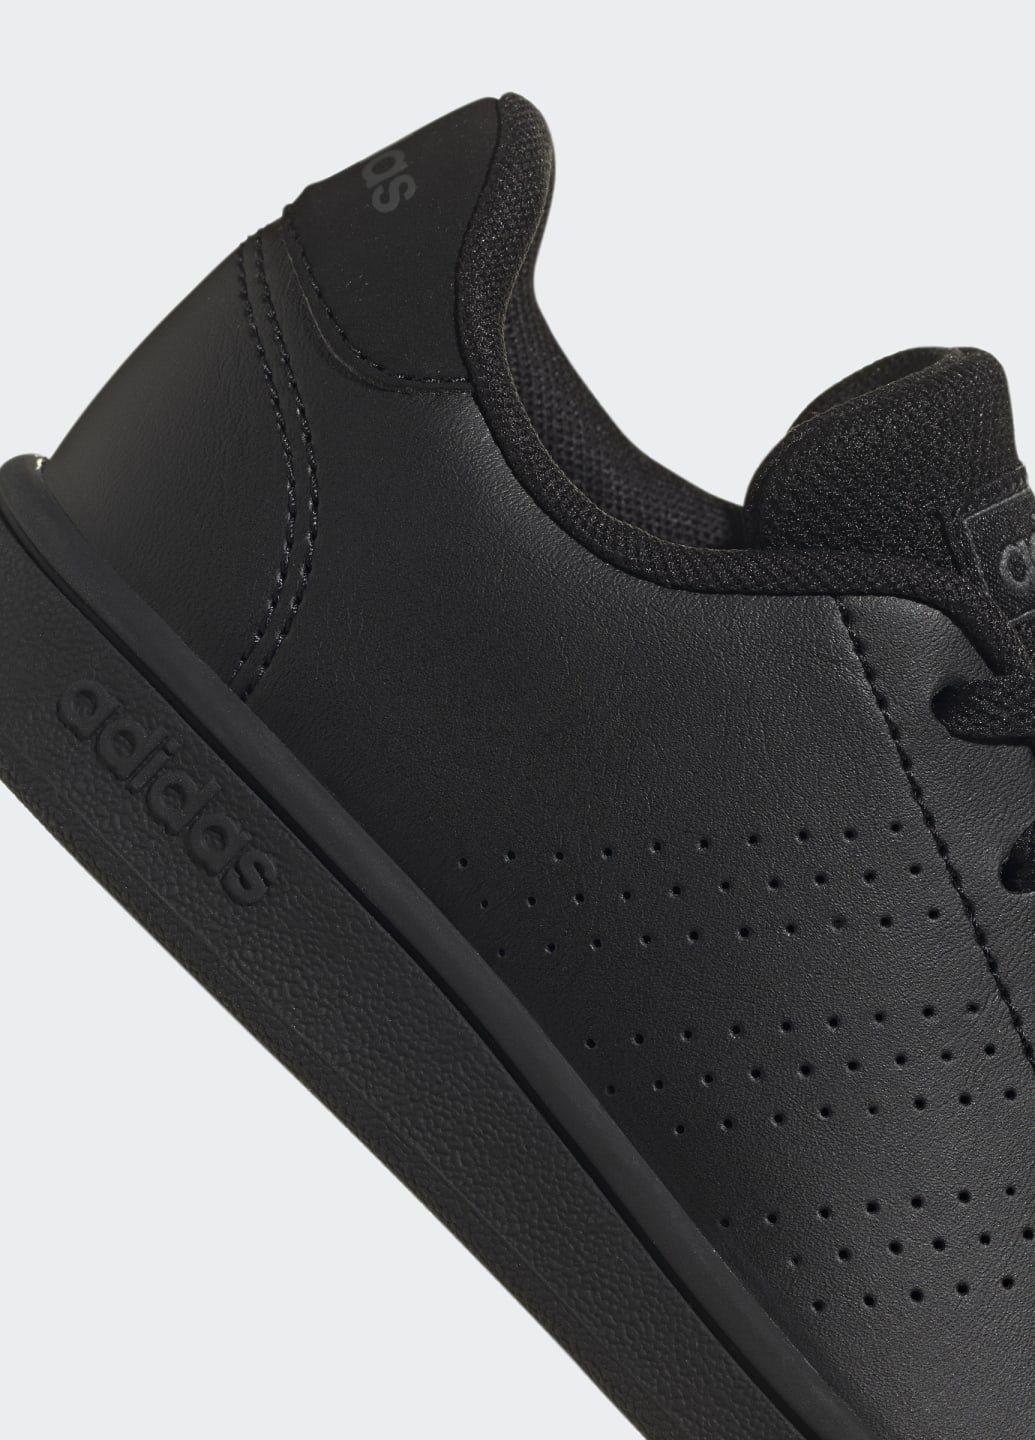 Черные кроссовки advantage lifestyle court lace adidas